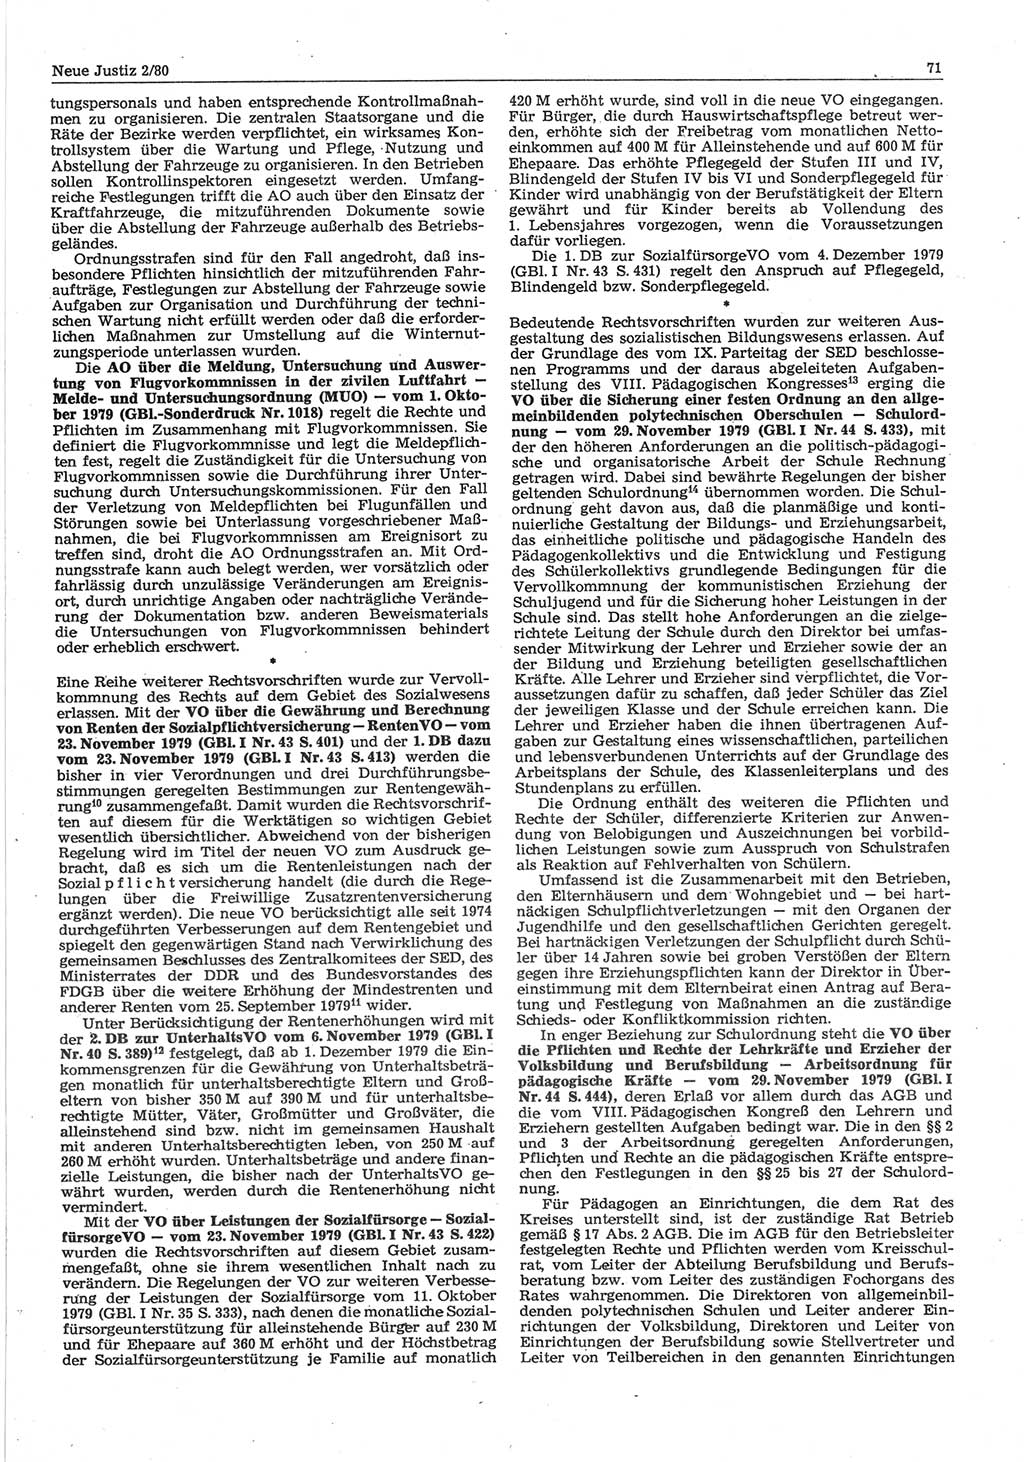 Neue Justiz (NJ), Zeitschrift für sozialistisches Recht und Gesetzlichkeit [Deutsche Demokratische Republik (DDR)], 34. Jahrgang 1980, Seite 71 (NJ DDR 1980, S. 71)